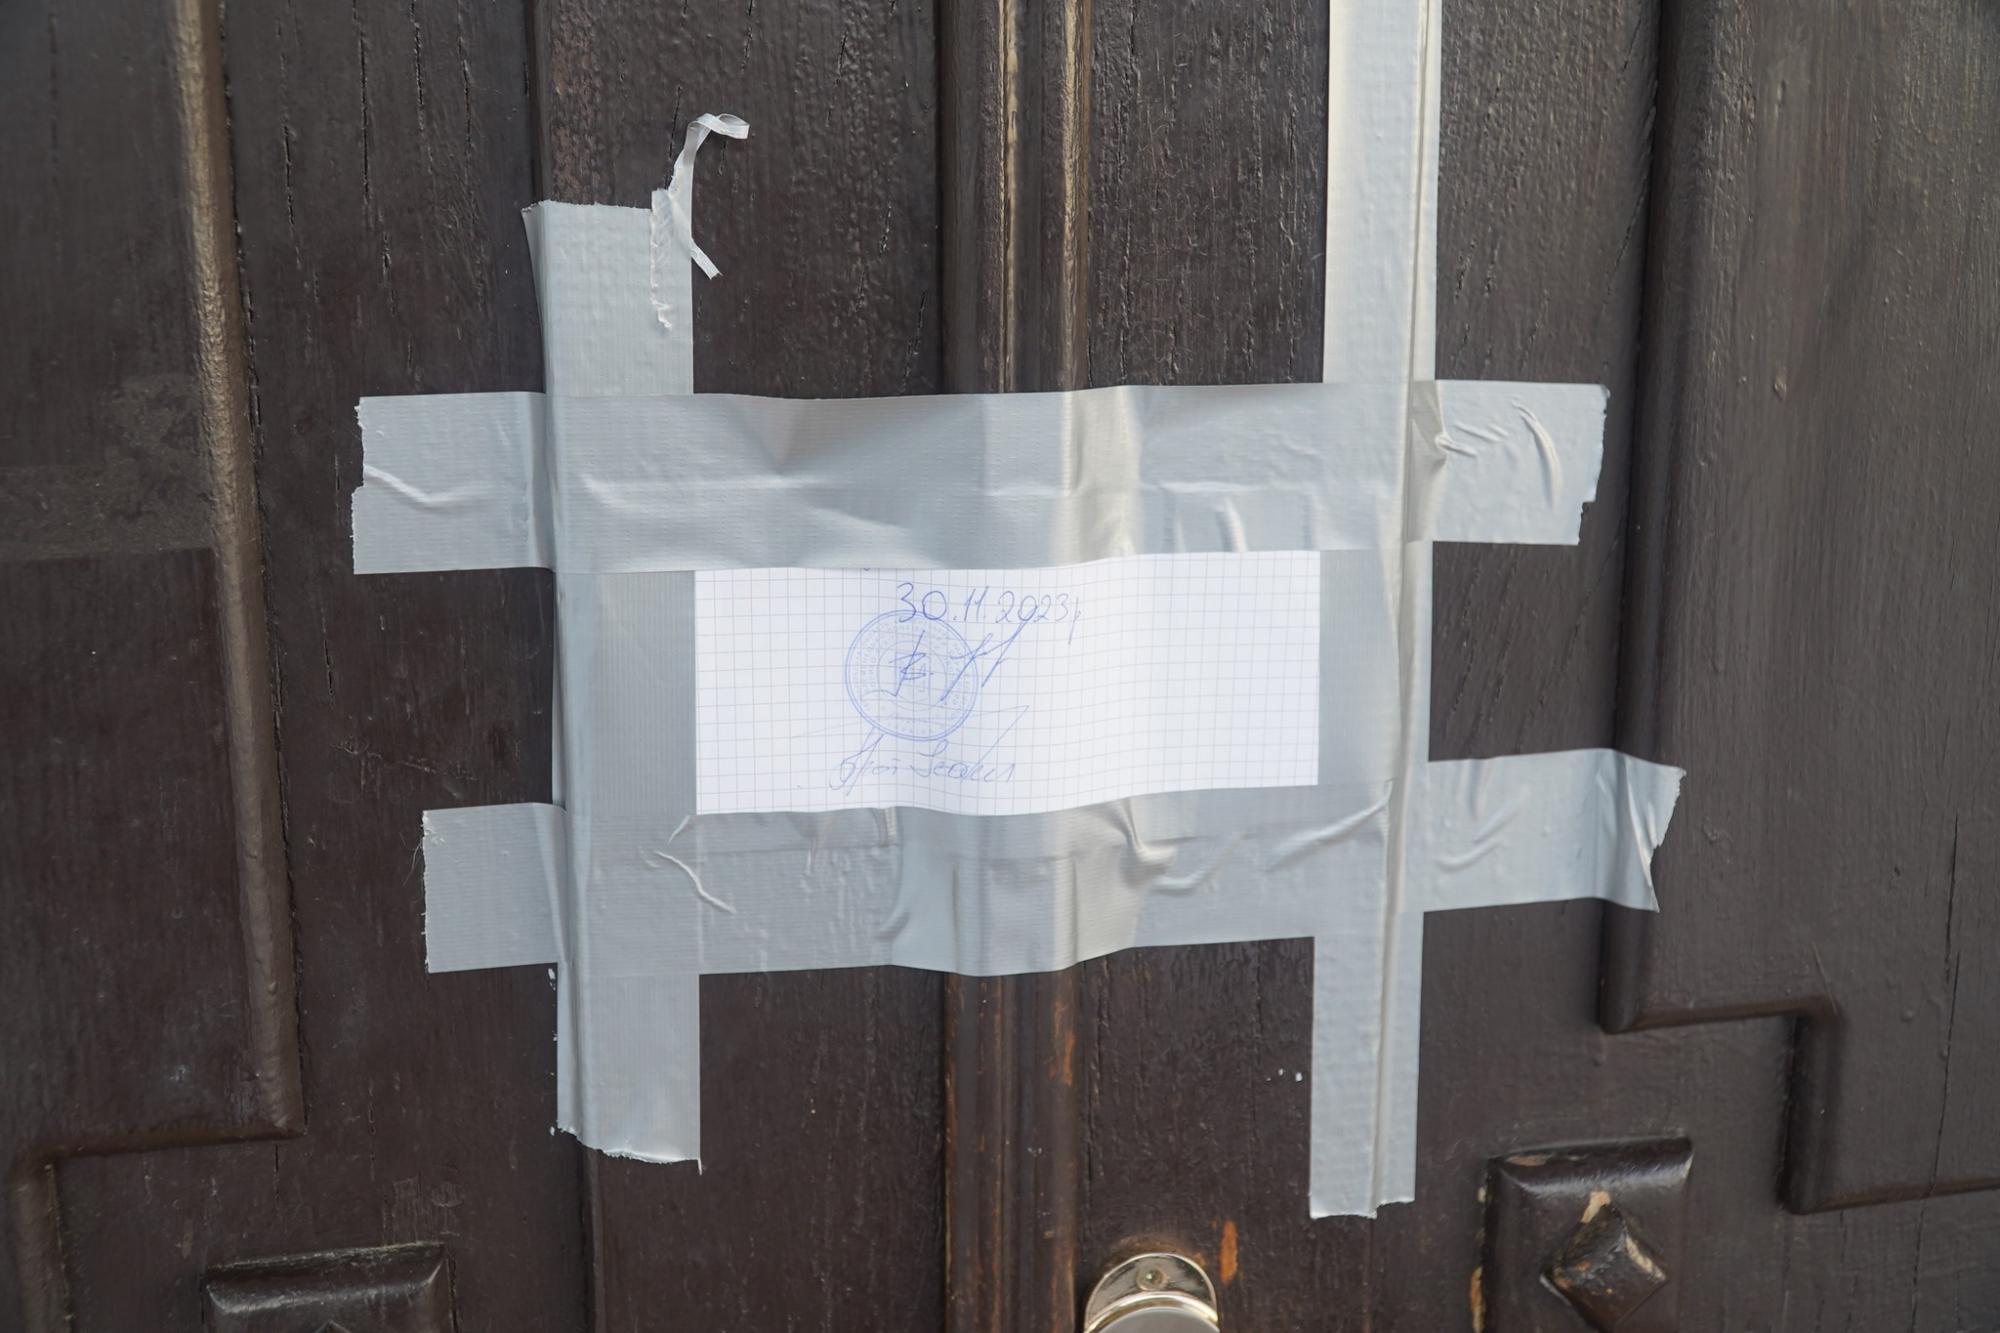 "Студентов направили в подвал". В Тернопольской области возник скандал между церковью и полицией (видео)